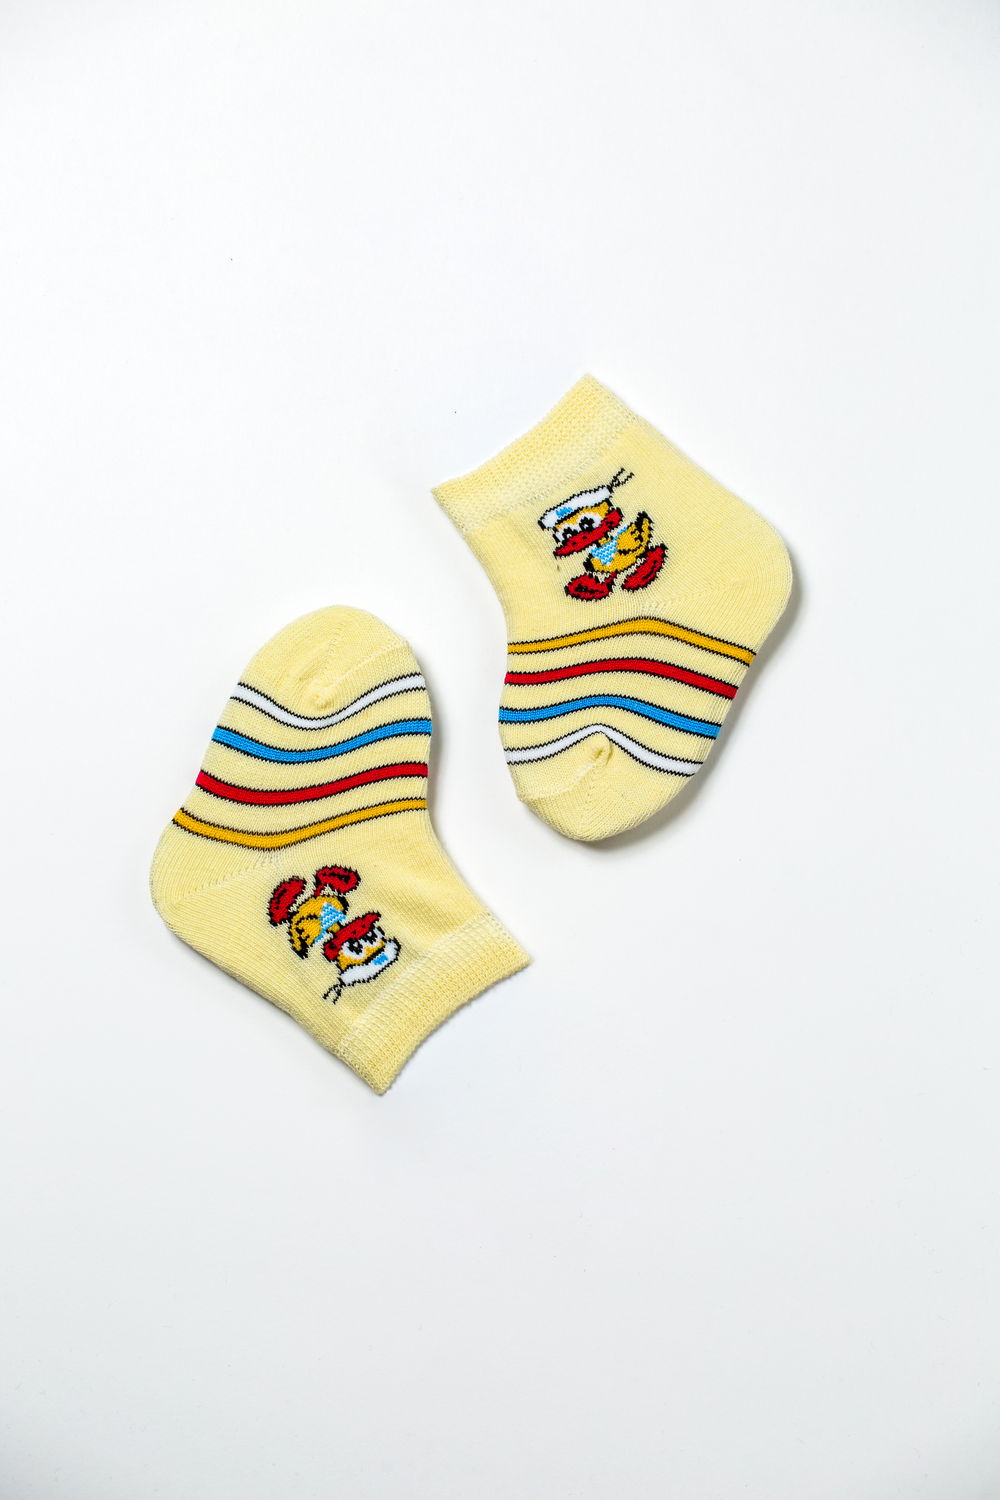 Купить носки детские с рисунком для мальчика и девочки - цвет: голубой,  размер: 11-12, артикул: 8С909, цена: 24 руб в интернет-магазине Bort-Shop